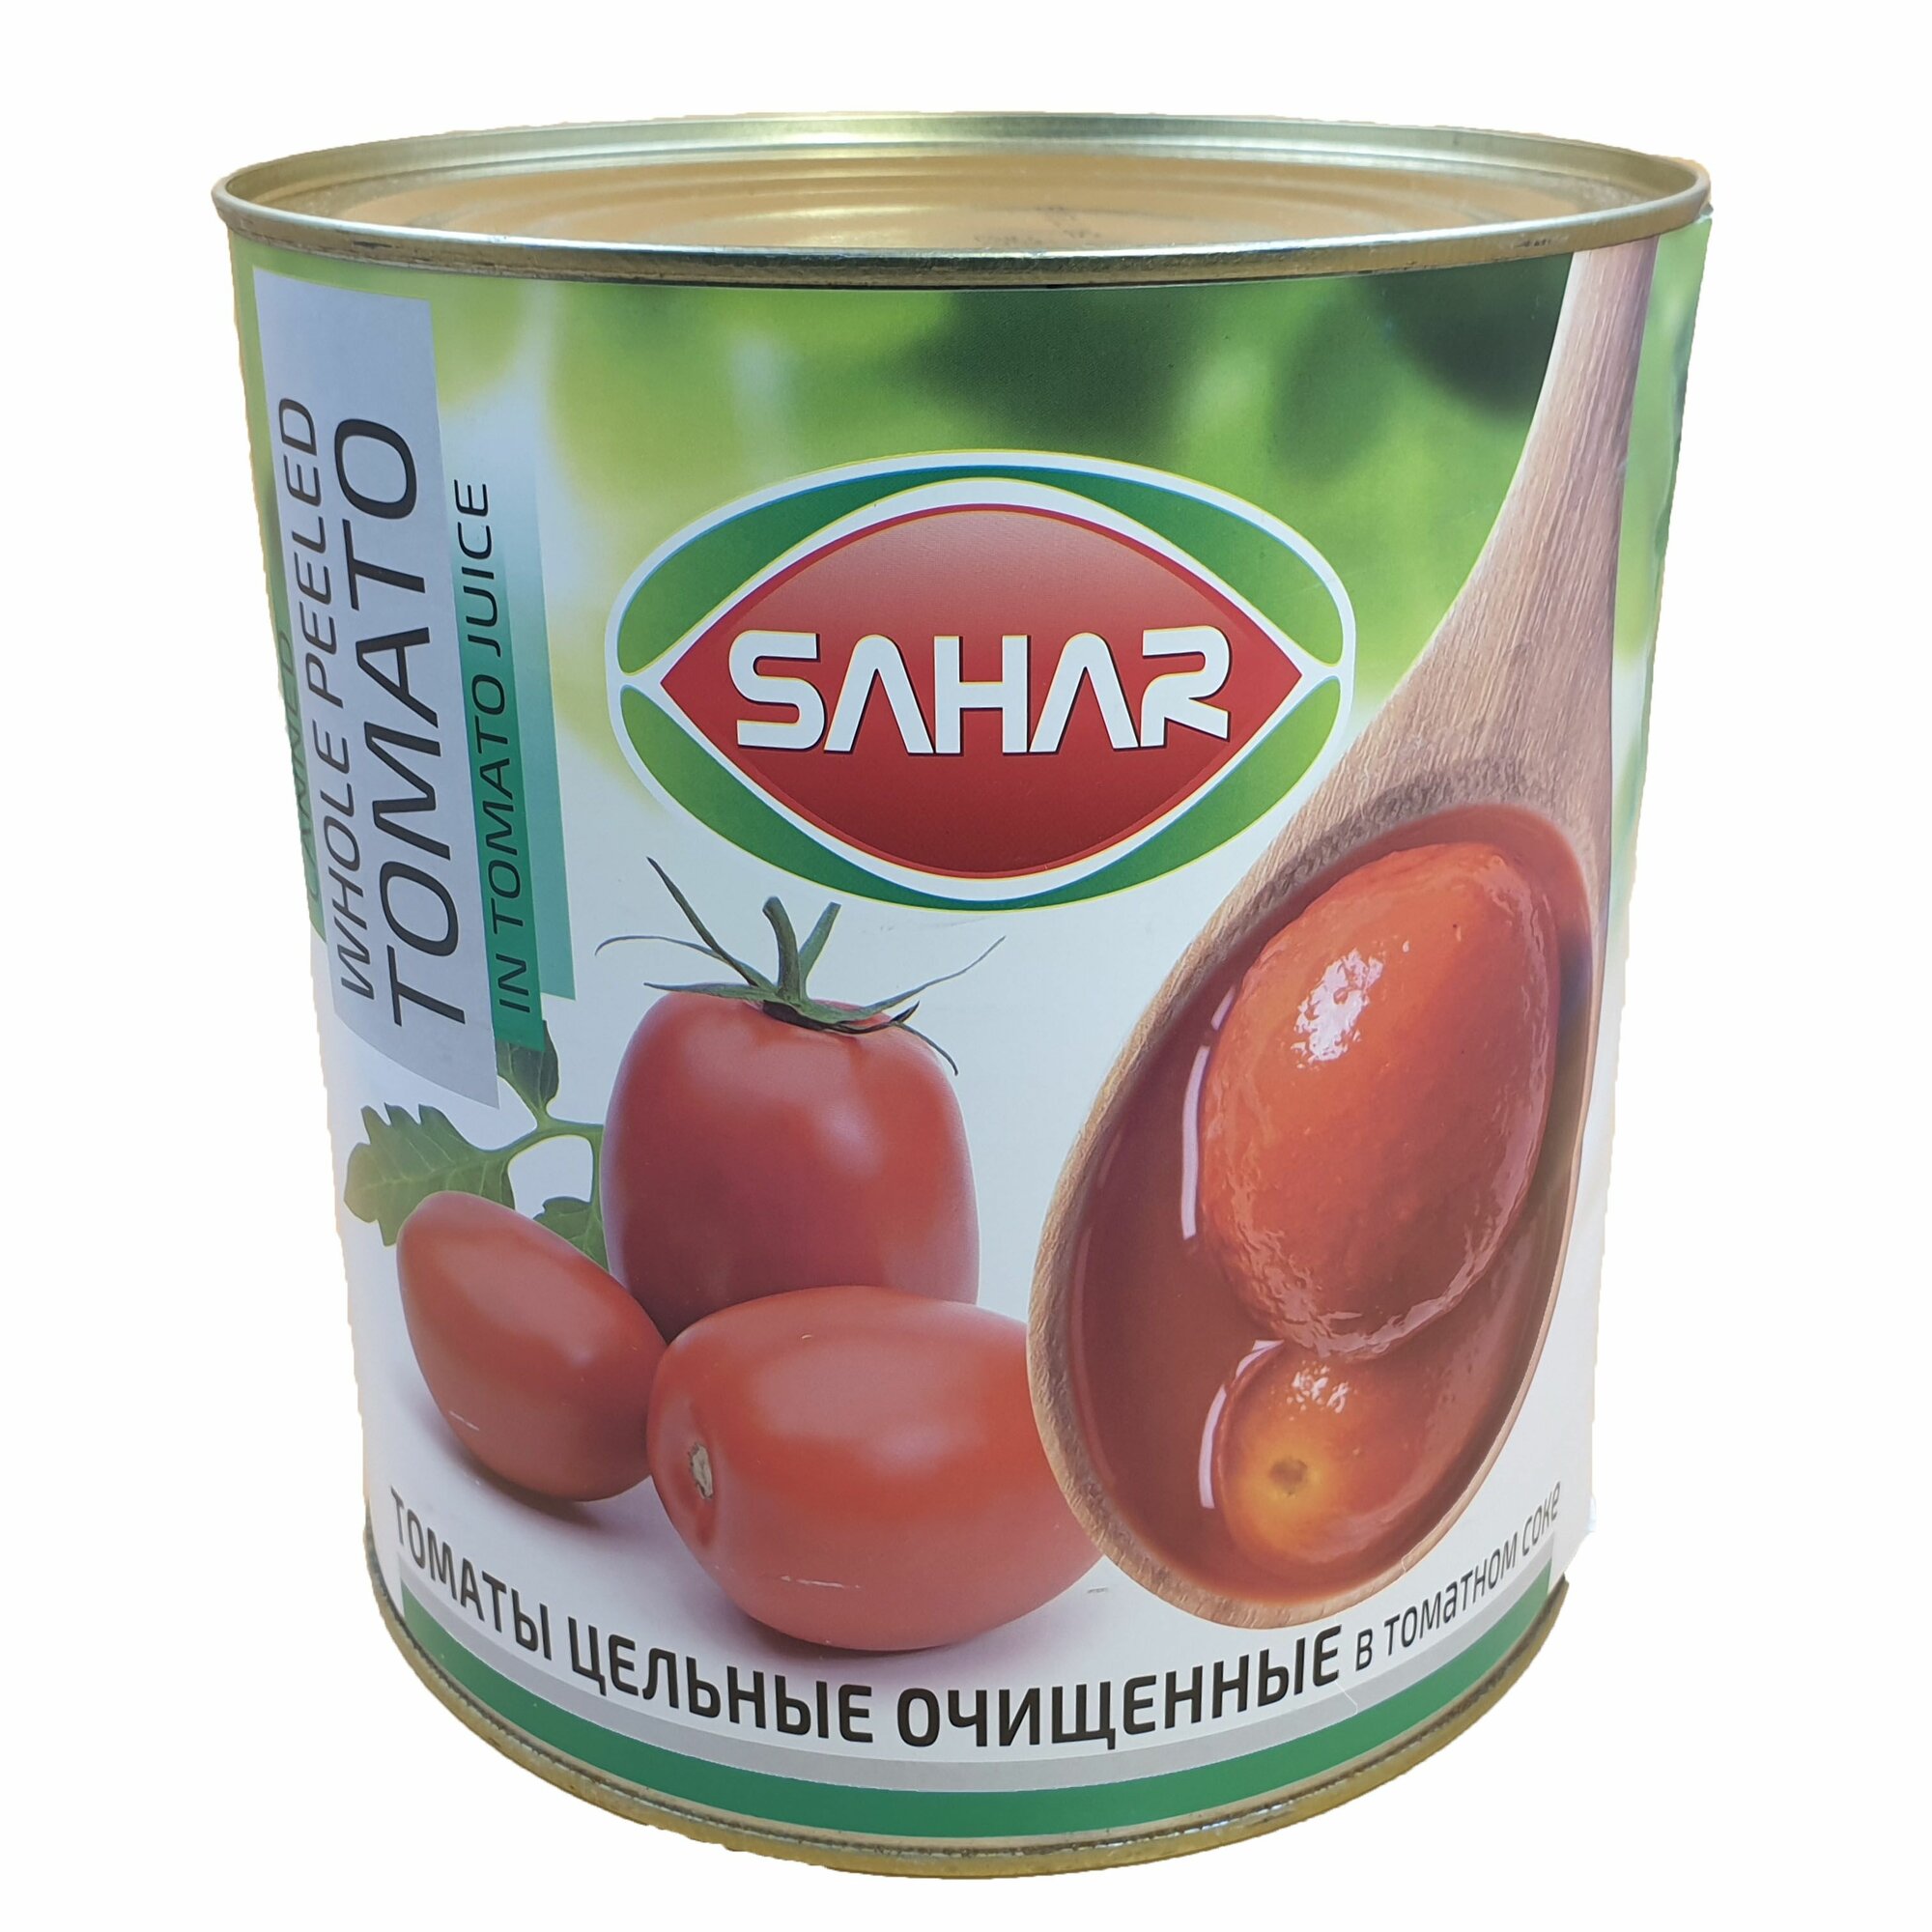 Томаты очищенные целые в томатном соке "Sahar" в большой банке 2500 г